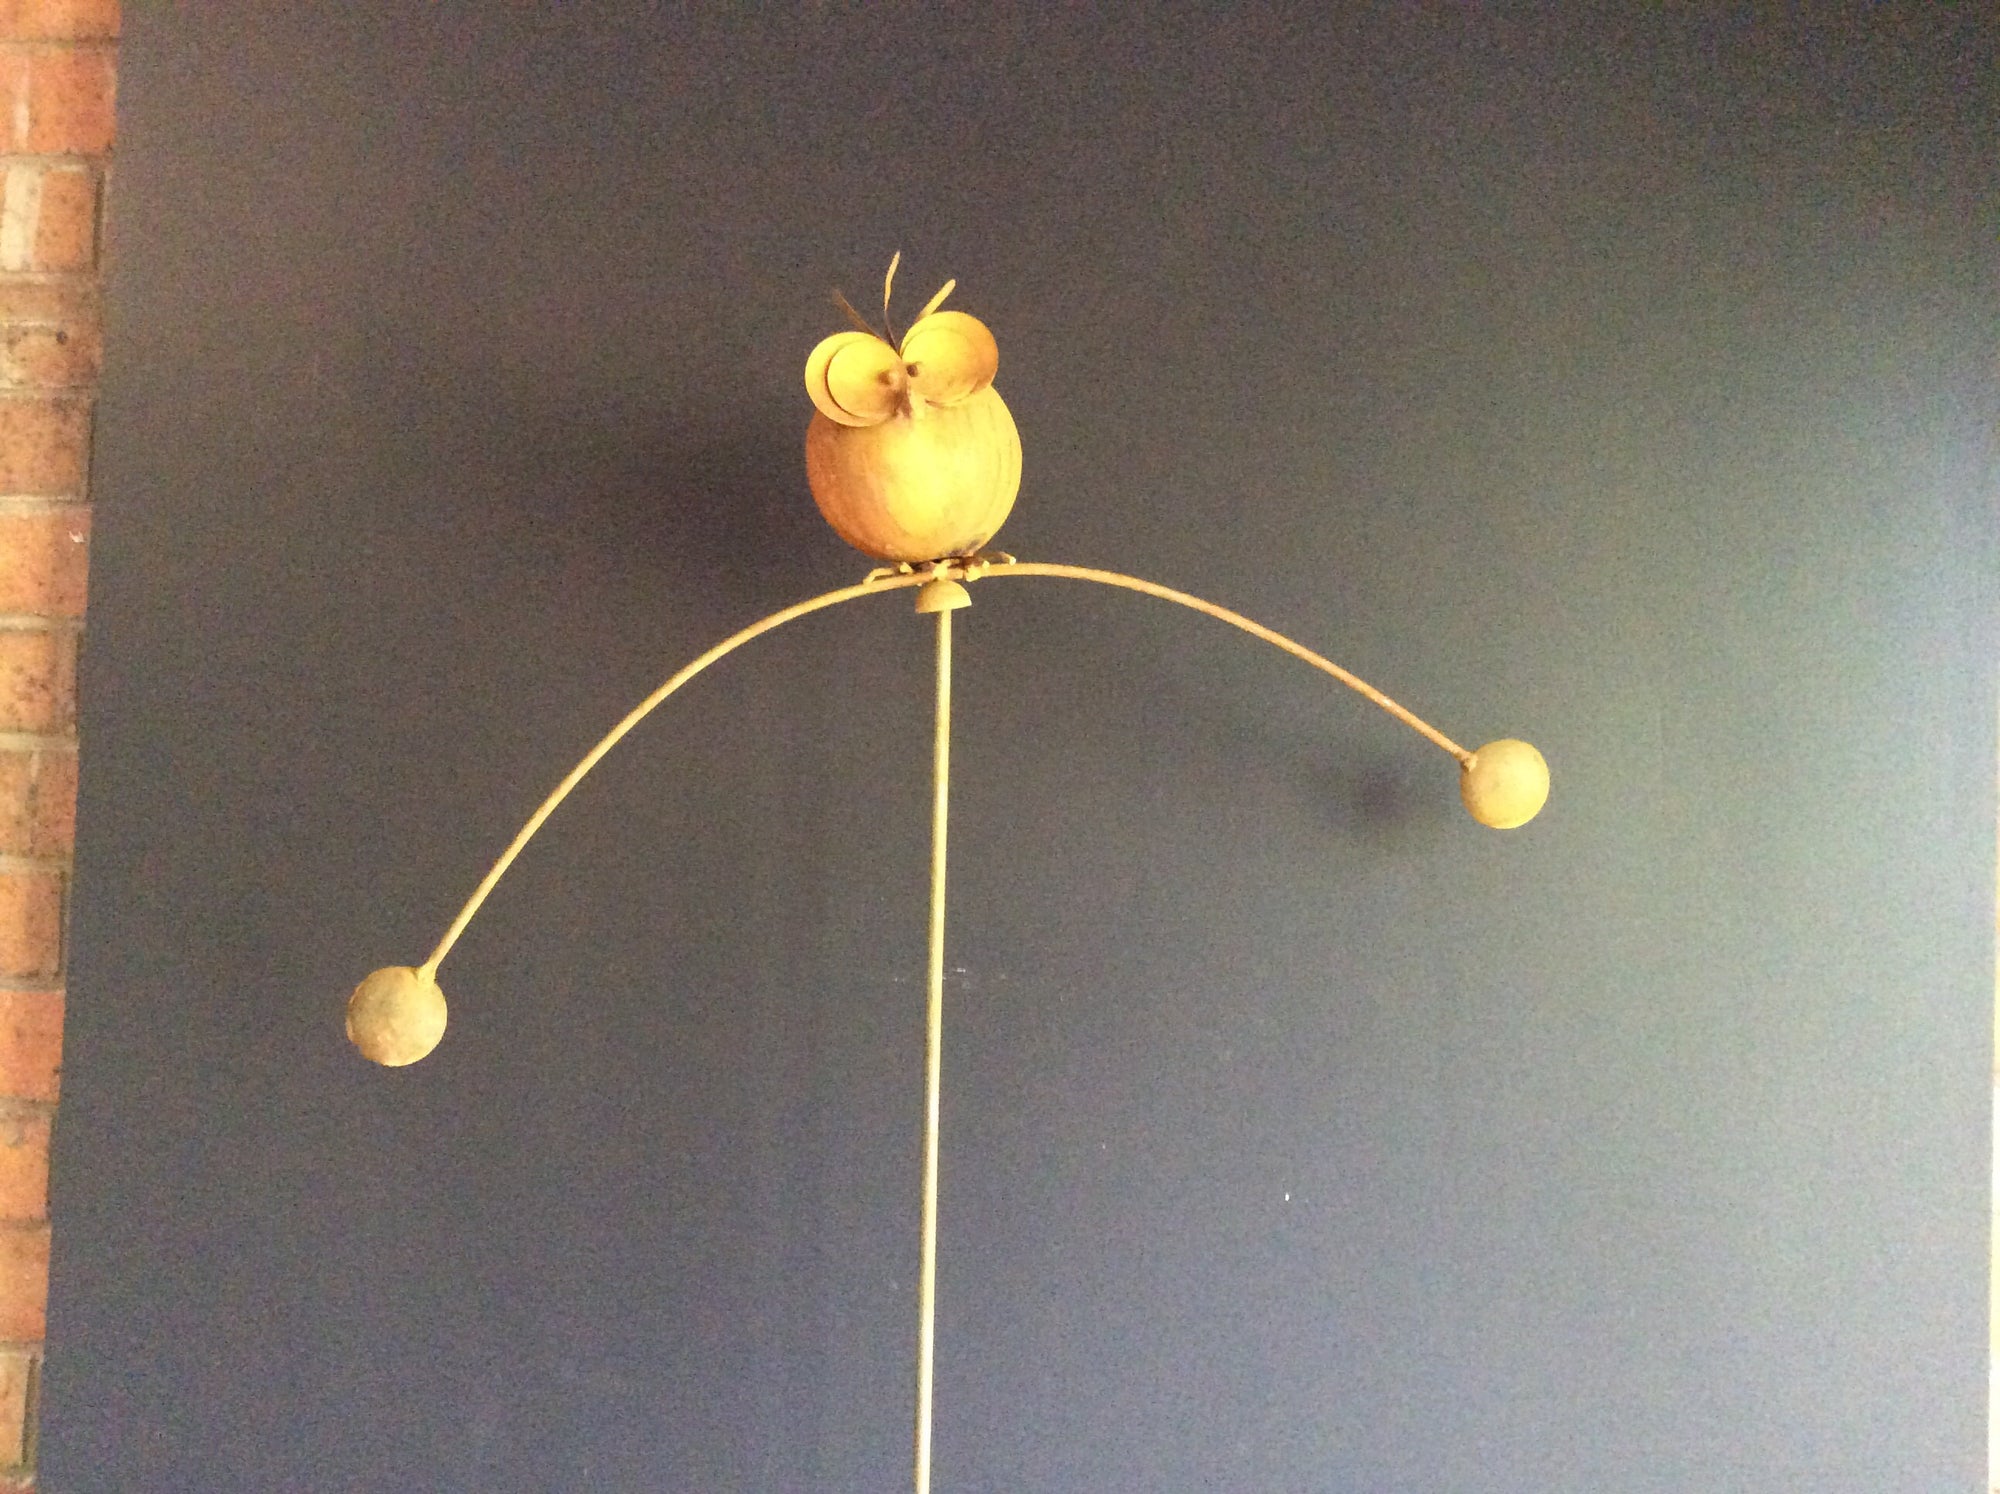   New Rust Balancer Bird -Round